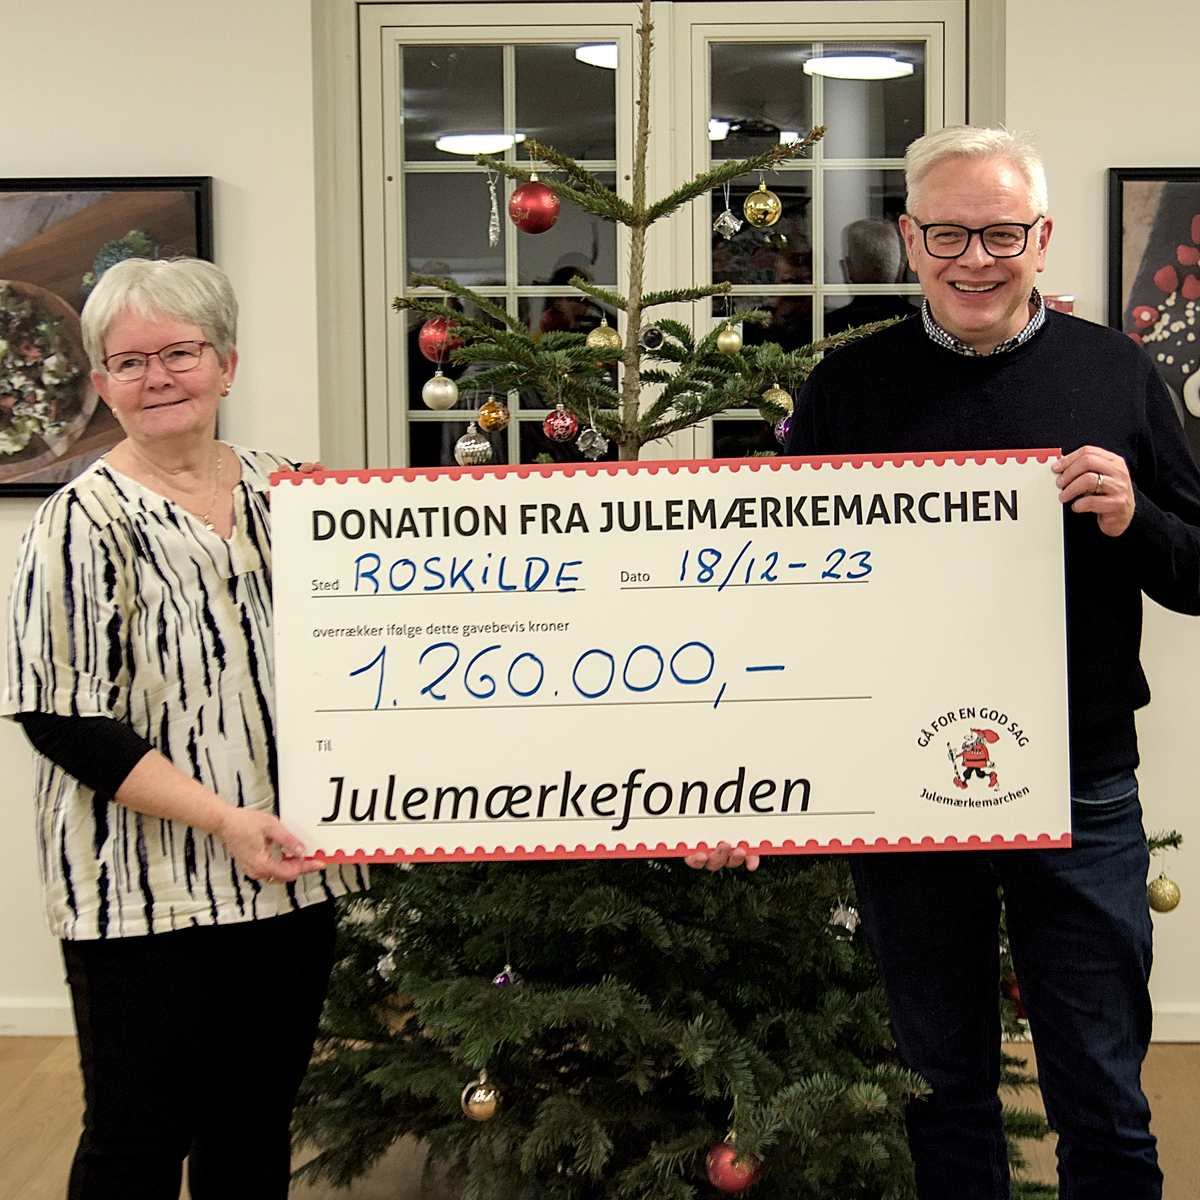 Direktør i Julemærkefonden, Søren Ravn Jensen, og formand for Julemærkemarchen, Birthe Juul